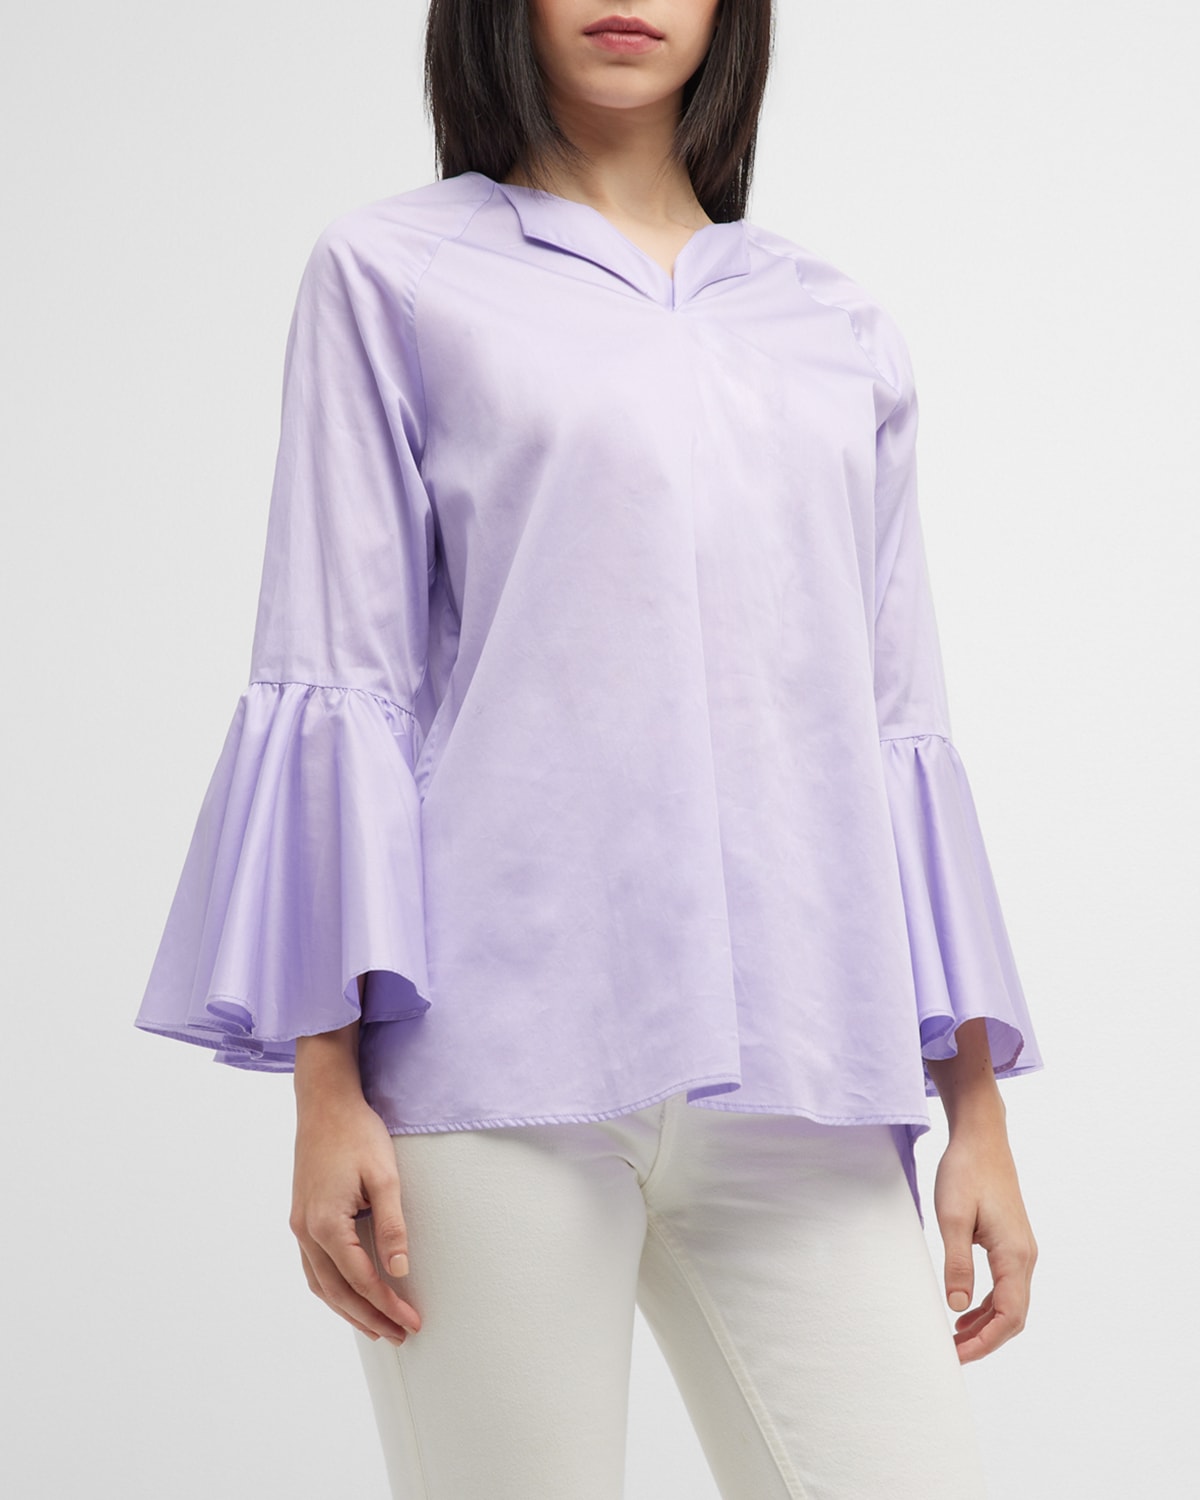 Harshman Zenaida Bell-Sleeve Cotton Blouse